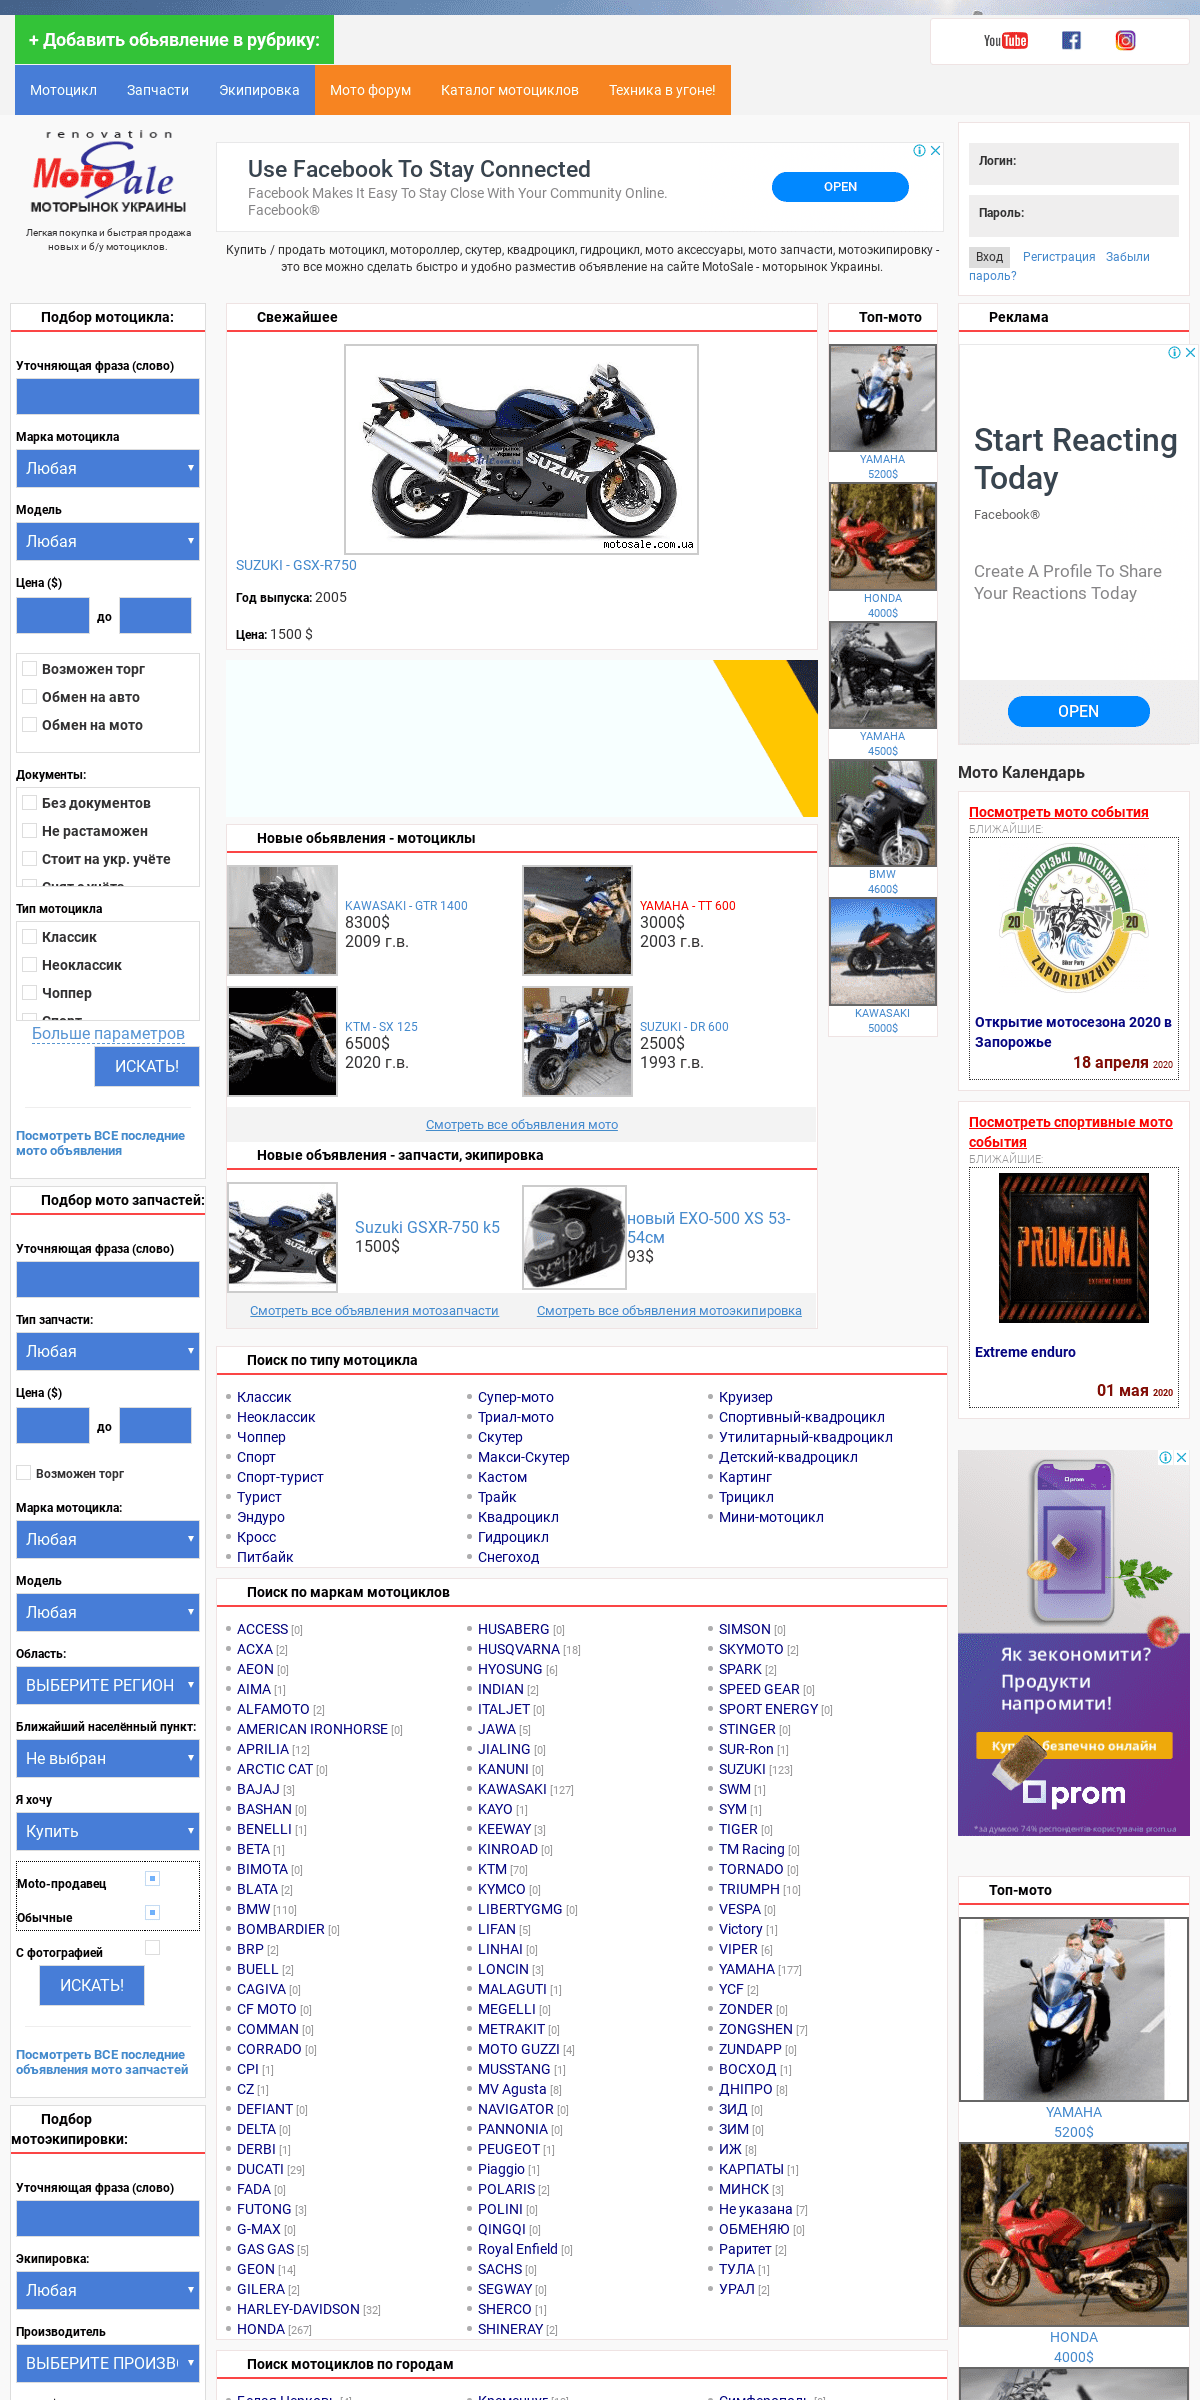 A complete backup of motosale.com.ua